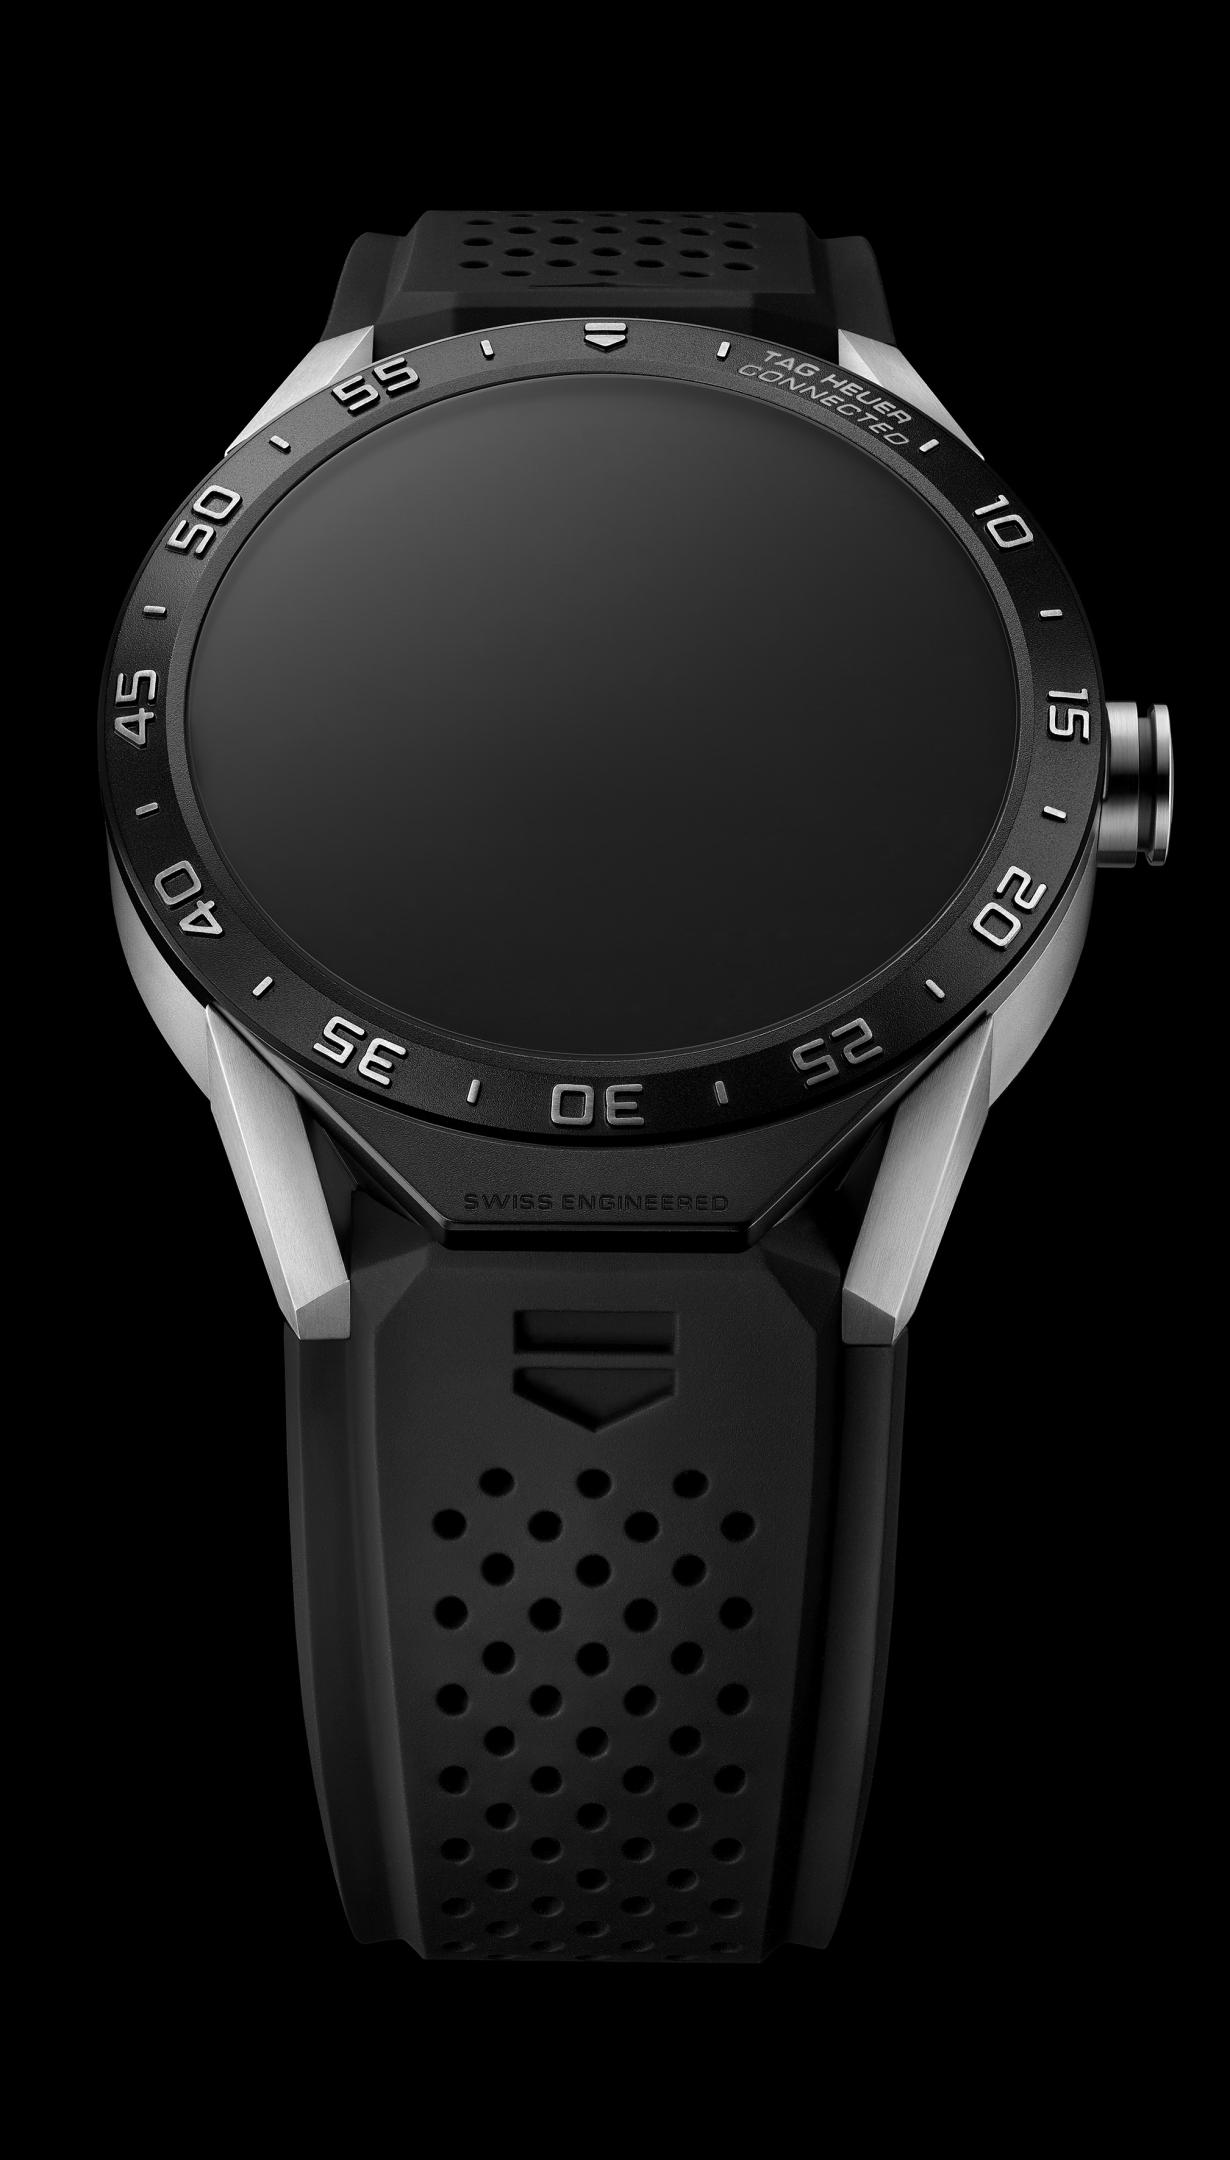 Tag Heuer i Google predstavile su povezani sat povezani sat kojeg je dizajnirao luksuzni švajcarski proizvođač, opremljen je Intel tehnologijom i deo Android Wear ponude